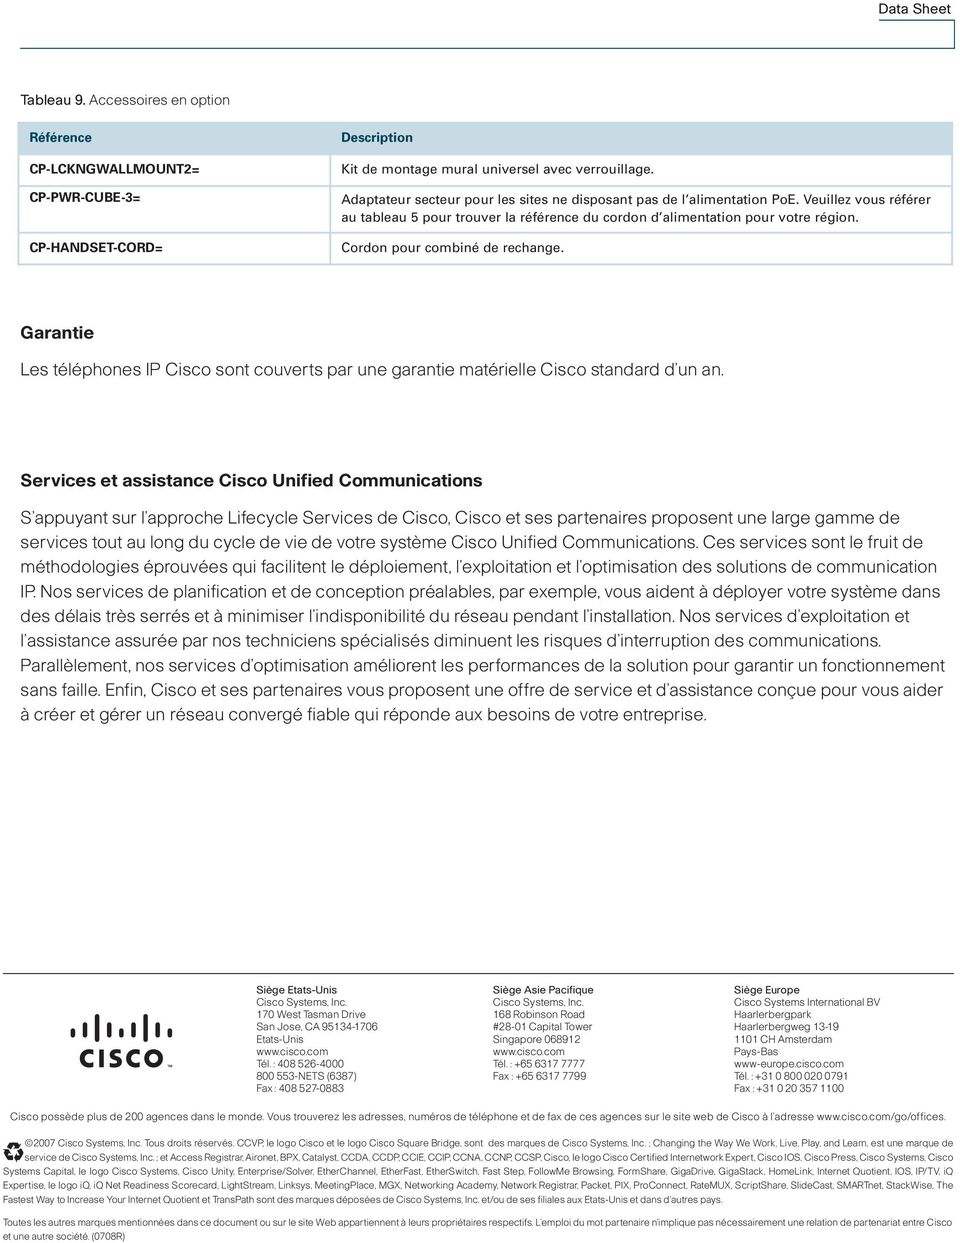 Cordon pour combiné de rechange. Garantie Les téléphones IP Cisco sont couverts par une garantie matérielle Cisco standard d un an.